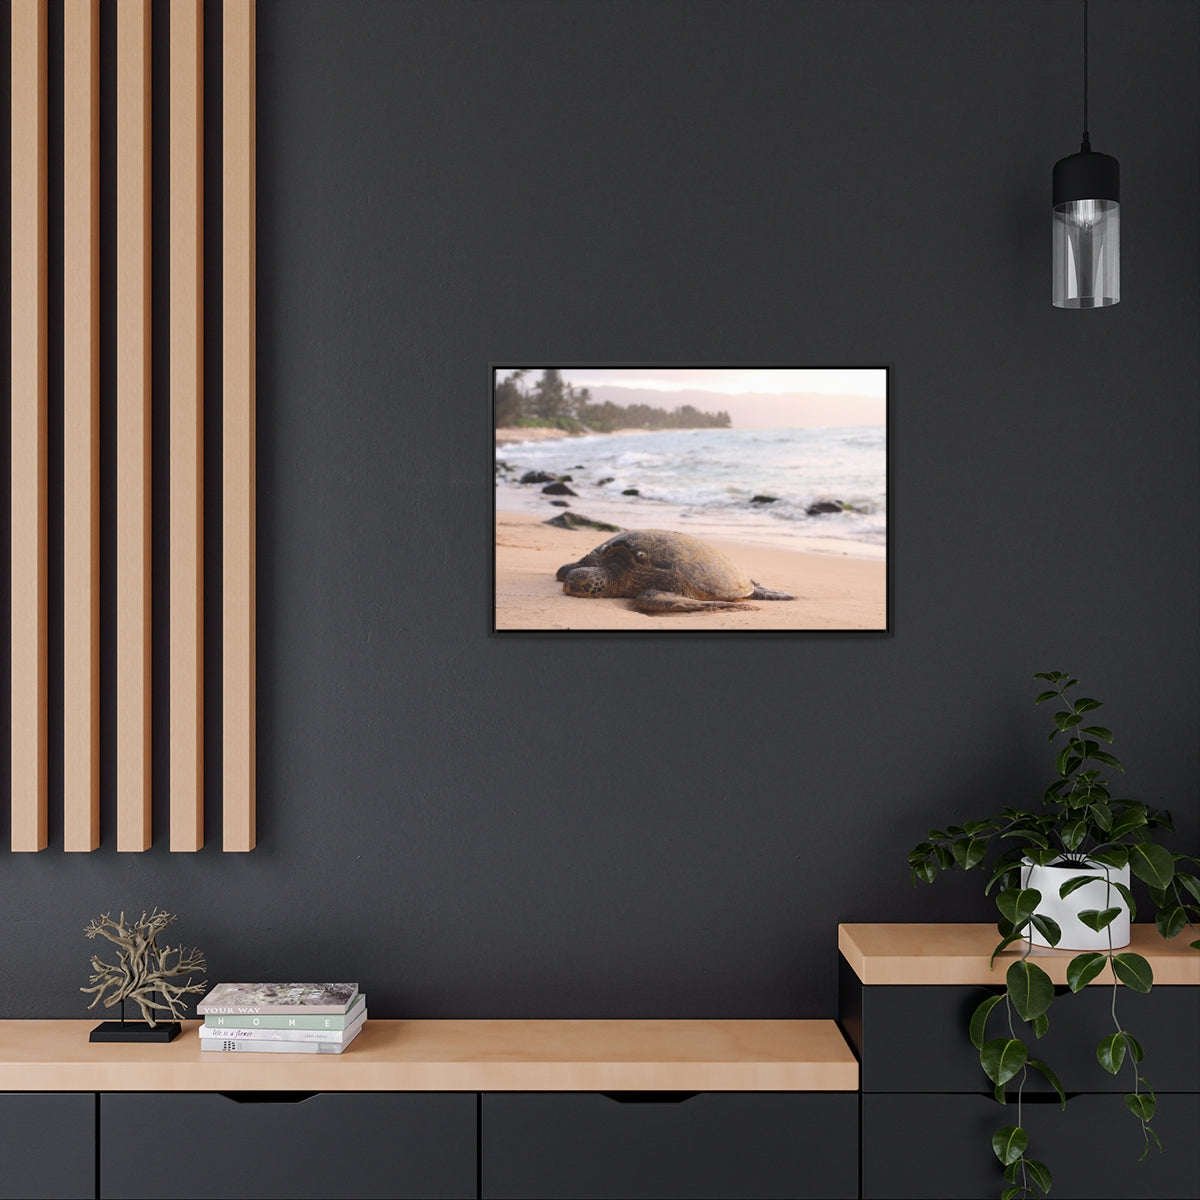 Sea Turtle on Beach Canvas Print